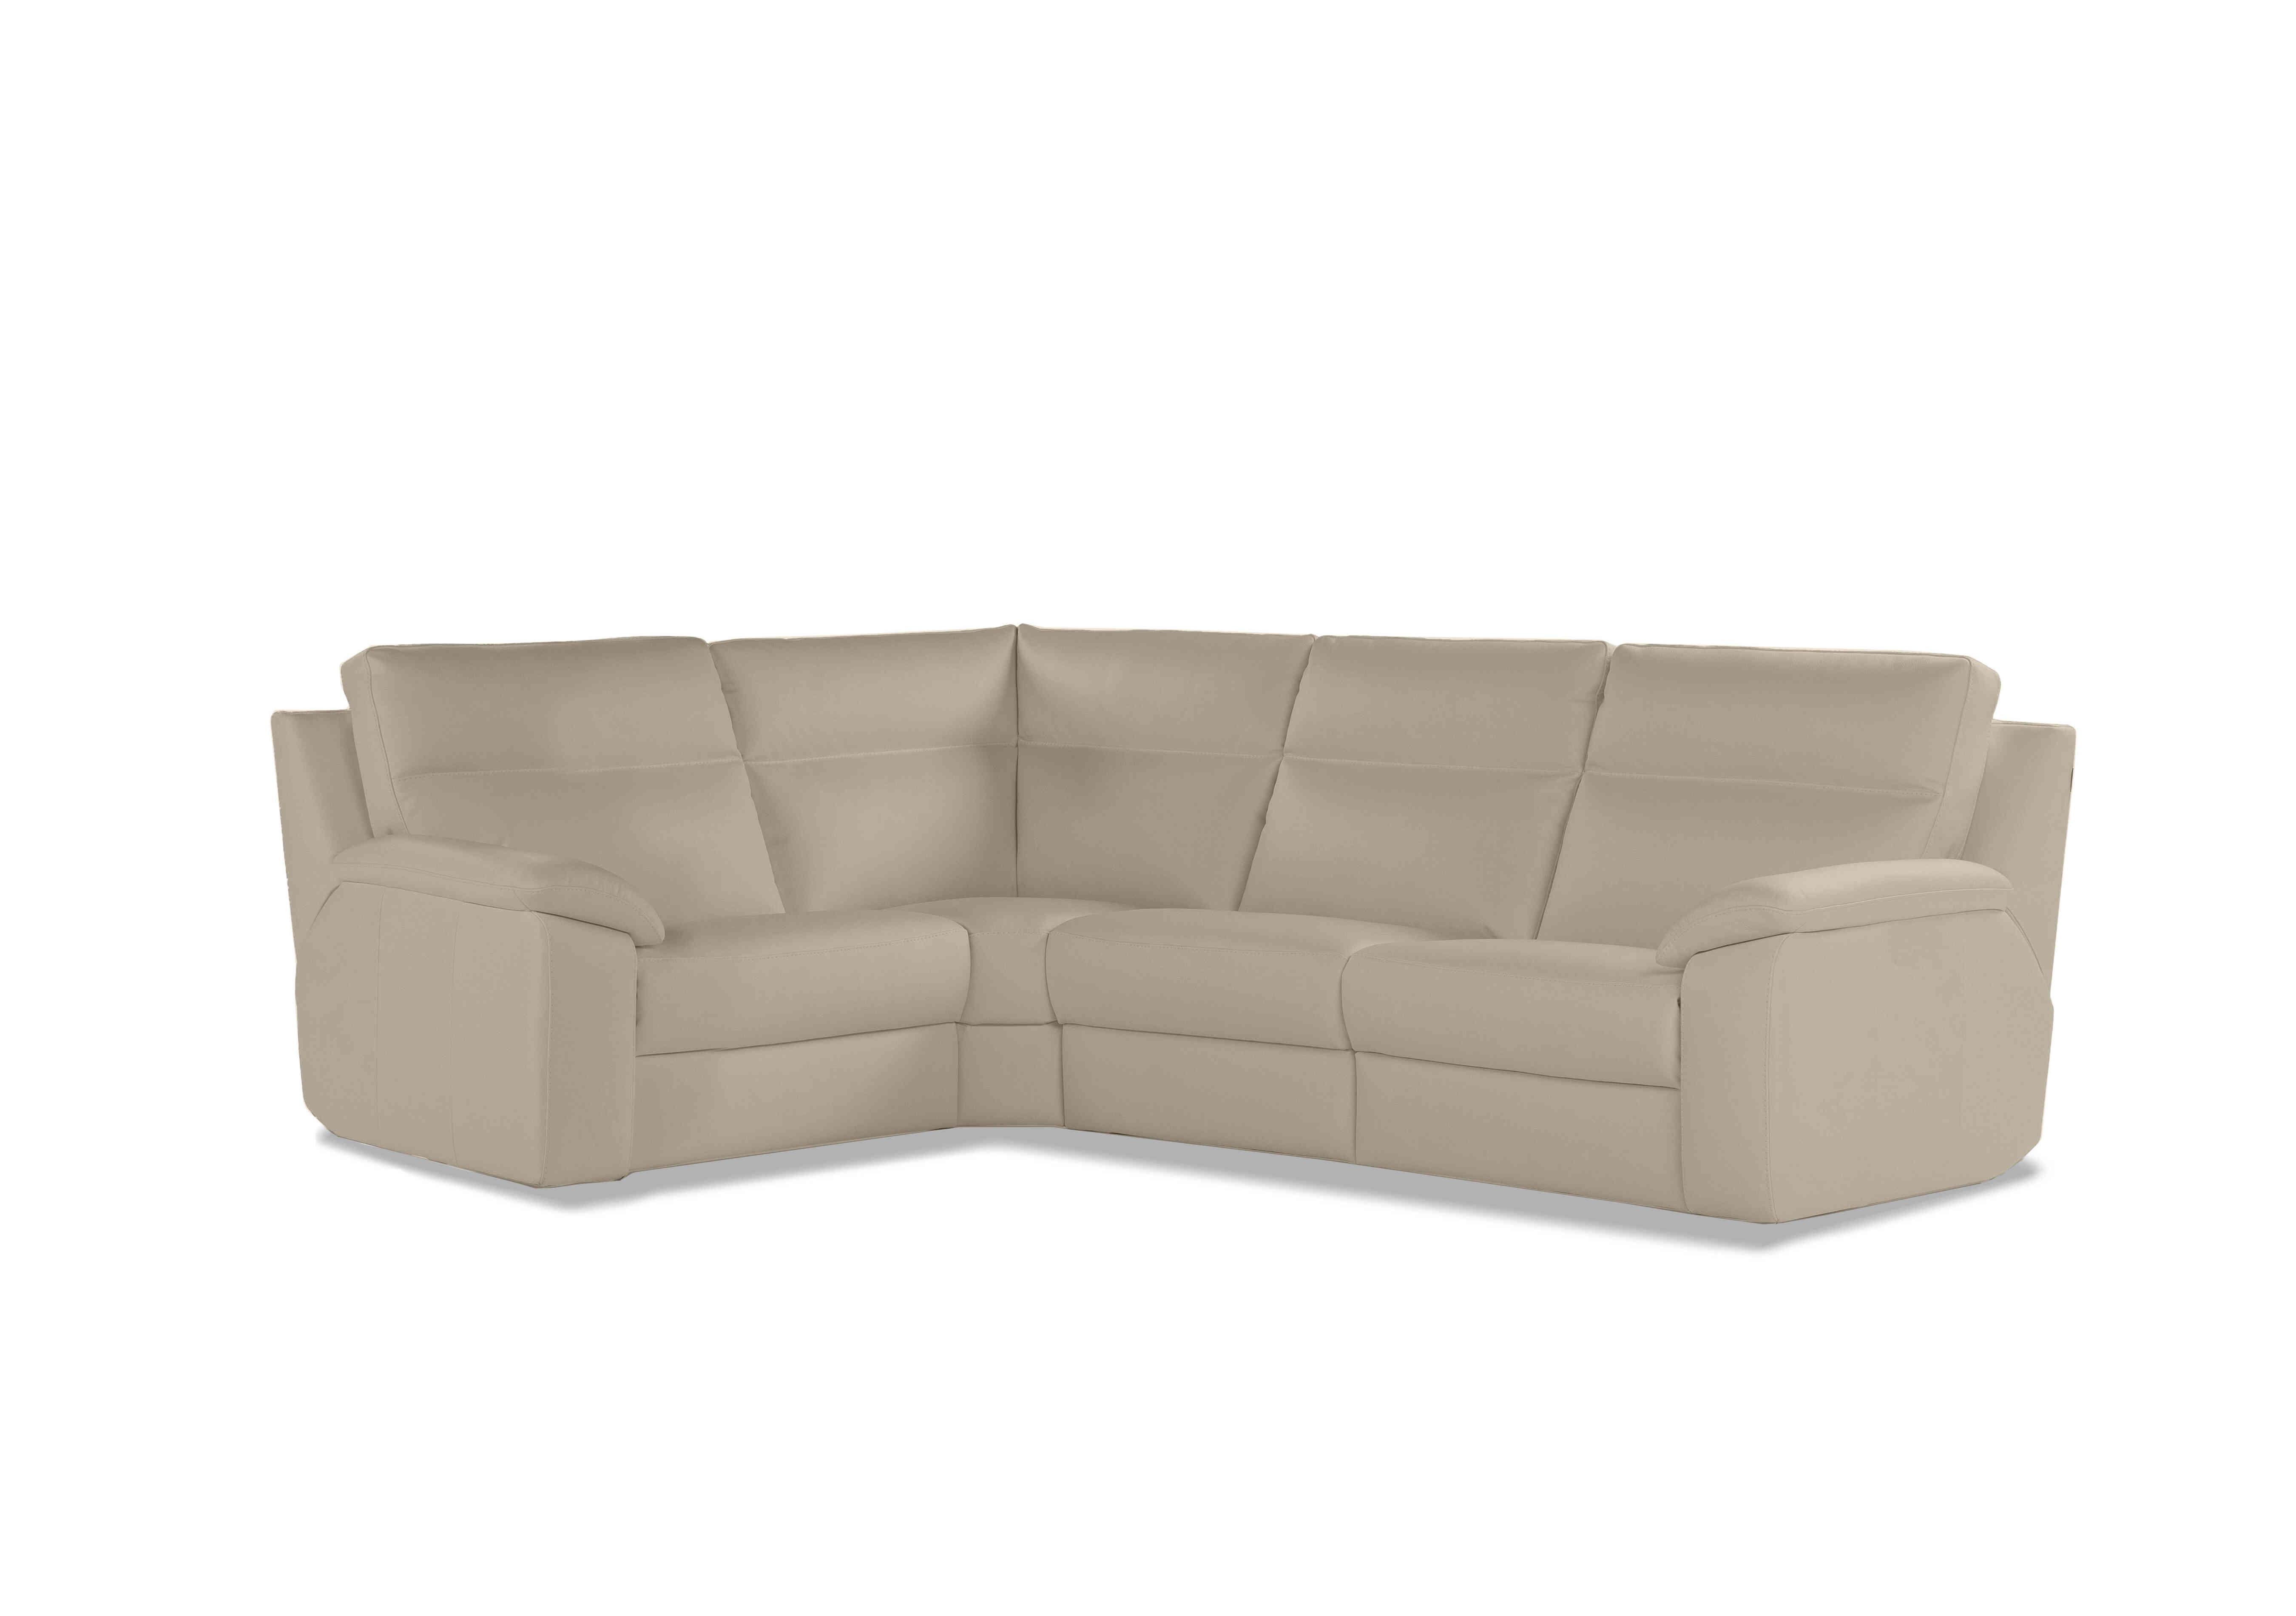 Pepino Small Leather Corner Sofa in 352 Torello Fango on Furniture Village